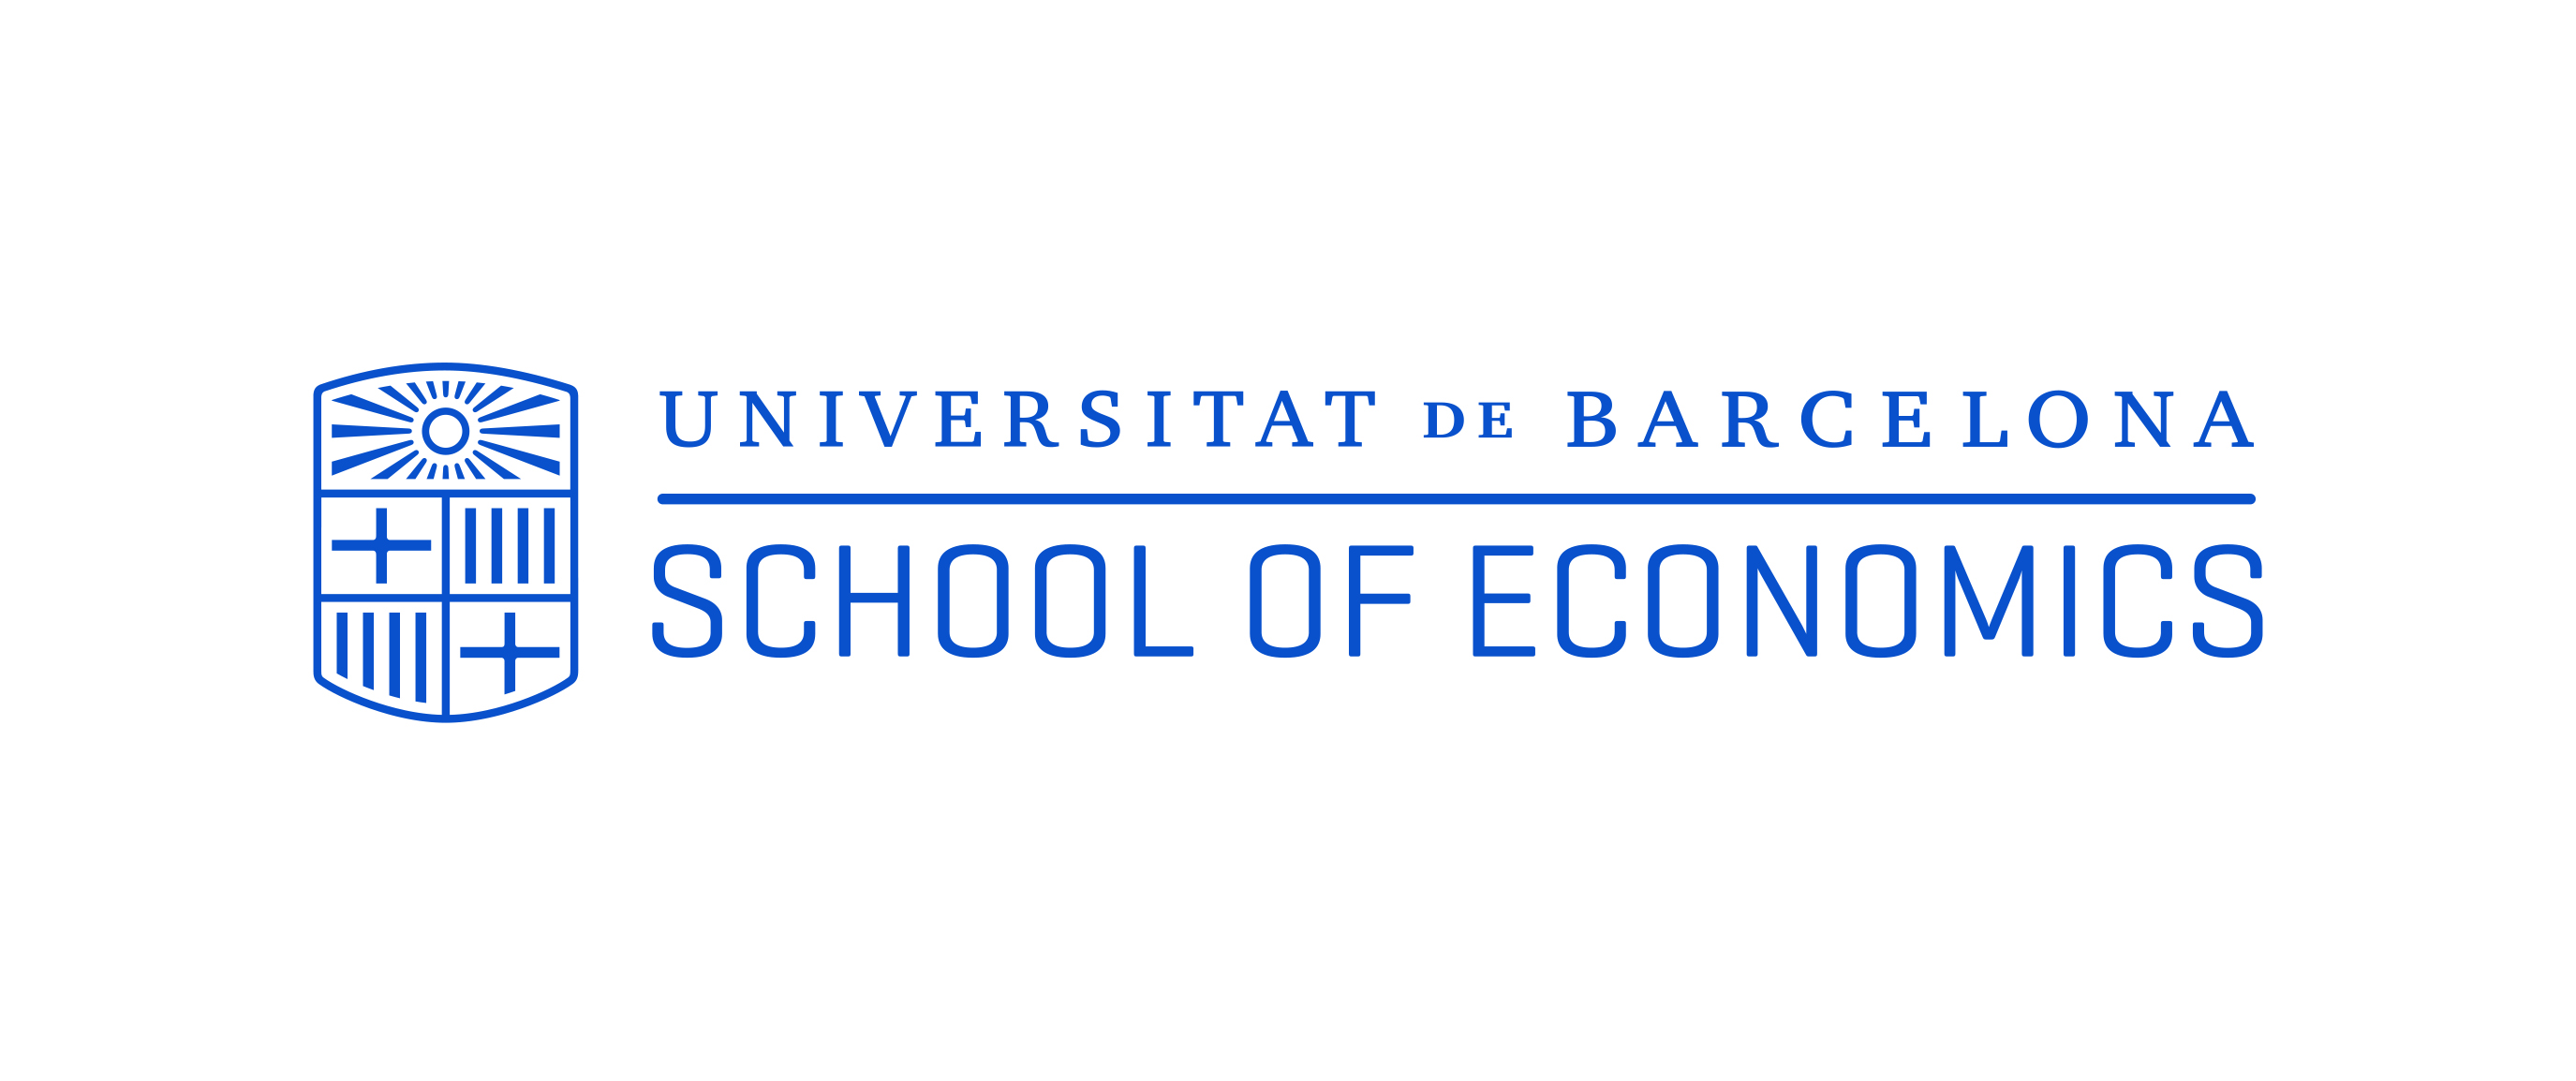 UB School of Economics